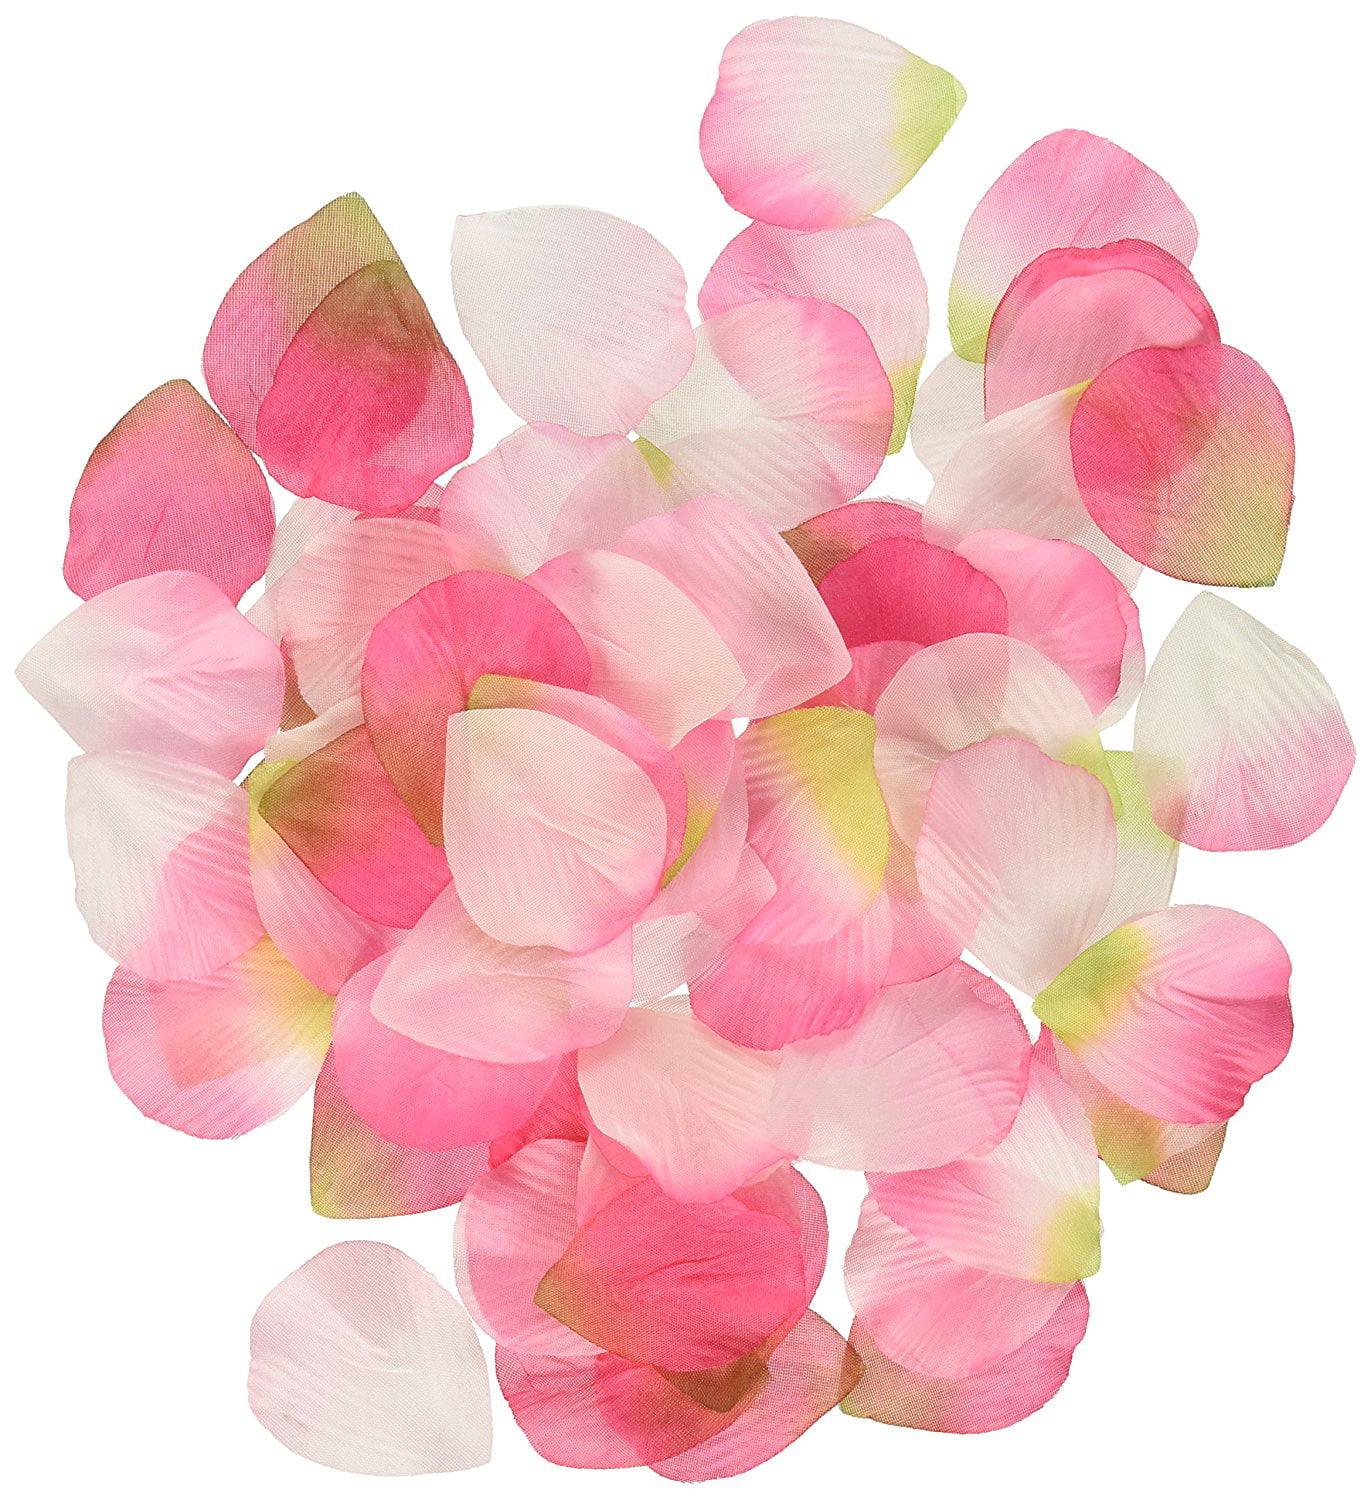 Ivory Rose Petals Wedding Day Or Gift Basket Decoration 250 Petals